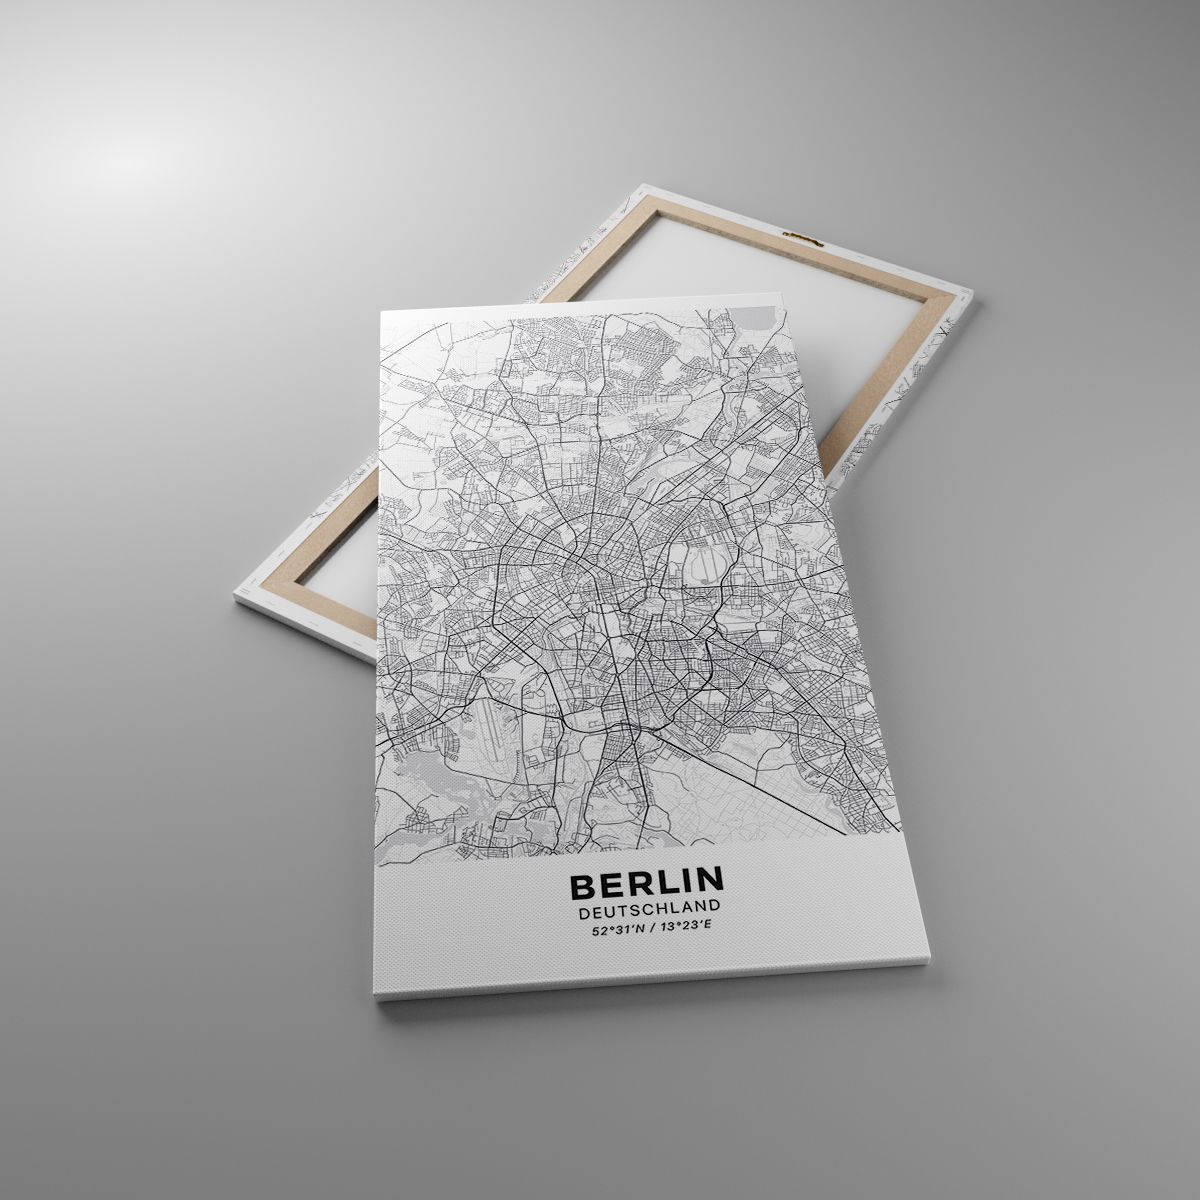 Cuadro Ciudad, Cuadro Mapa De La Ciudad, Cuadro Berlina, Cuadro Gráficos, Cuadro Alemania